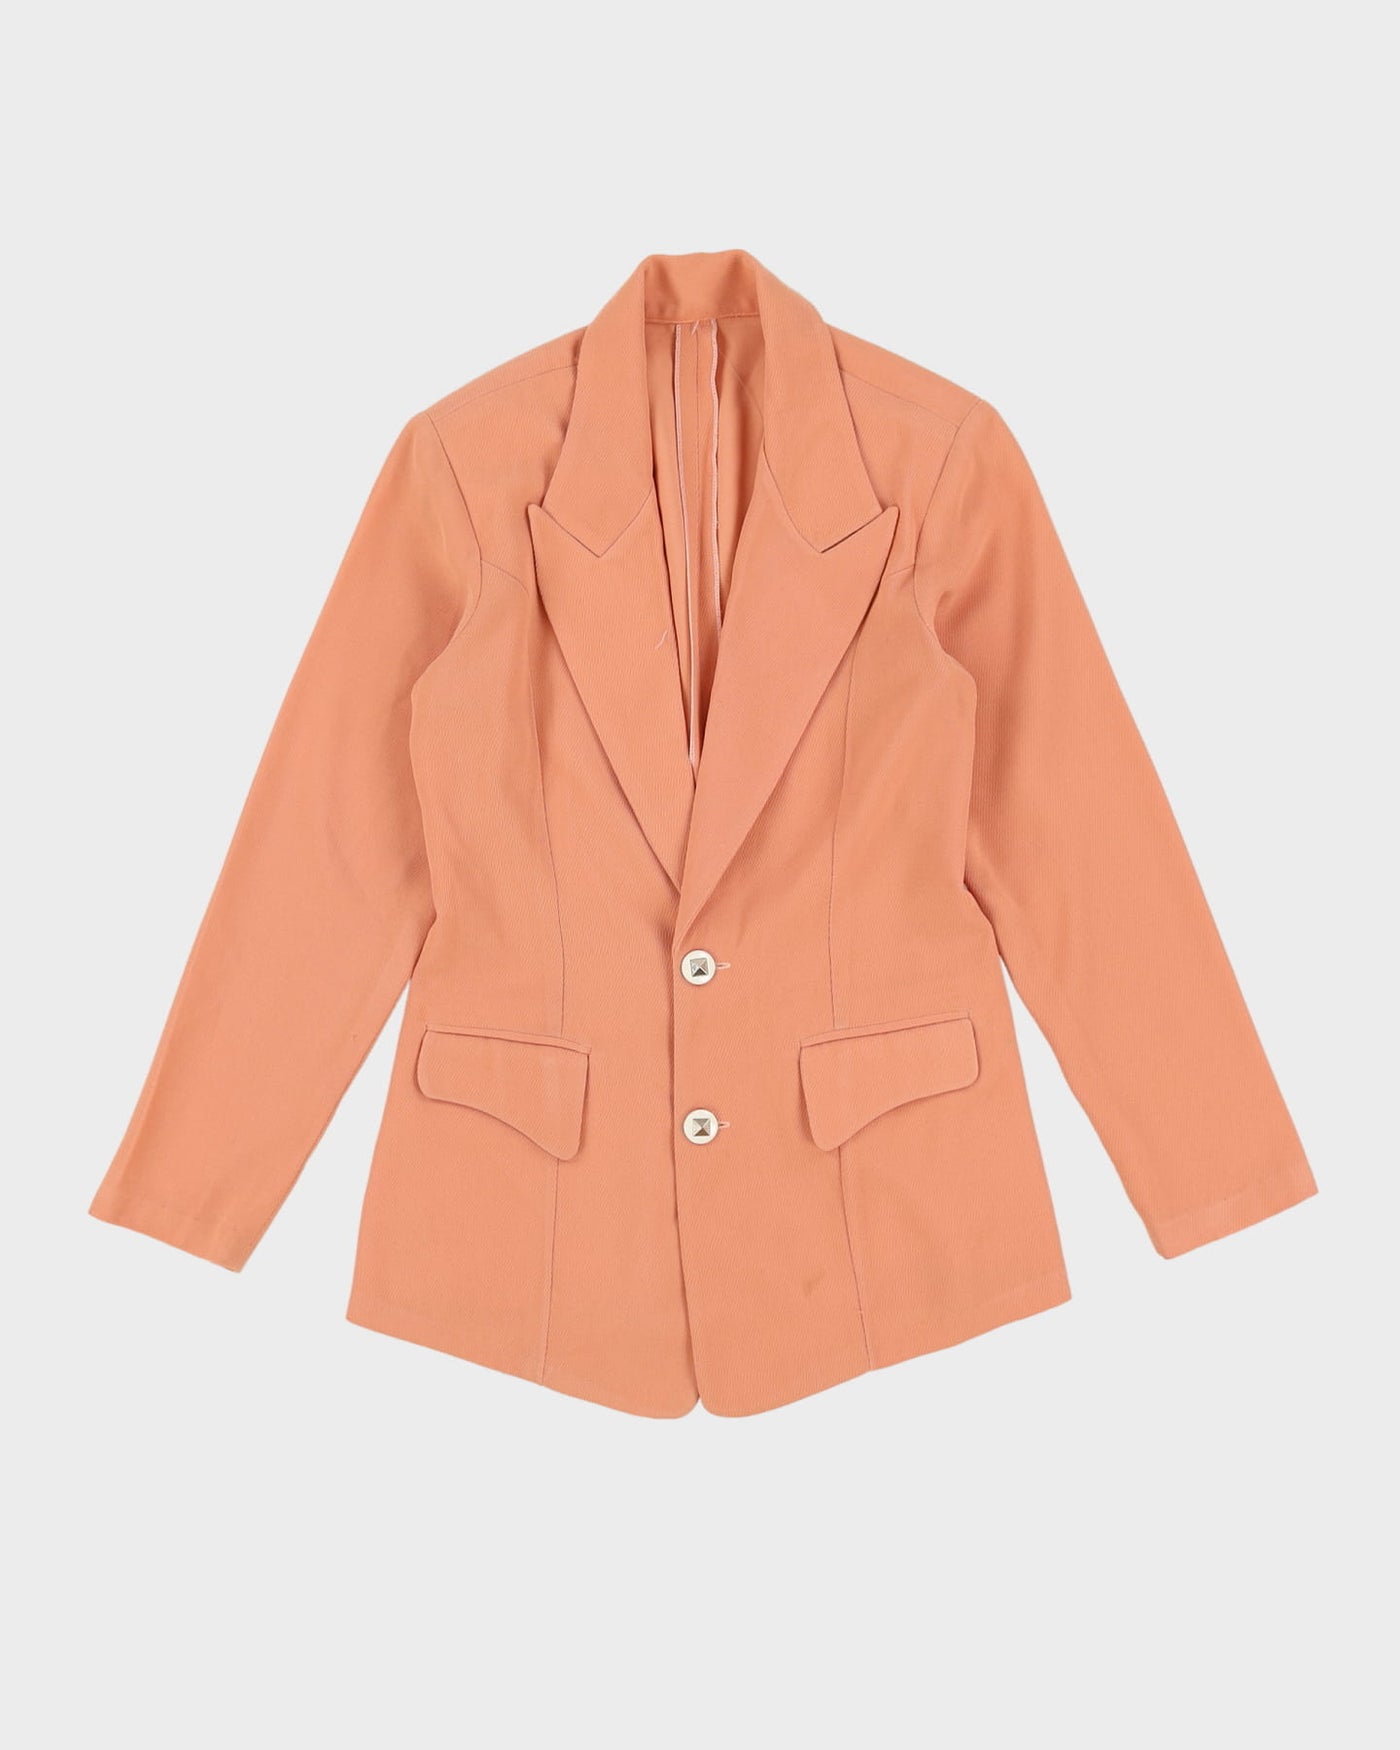 Vintage 1990s Orange Trouser And Jacket Suit -XXS